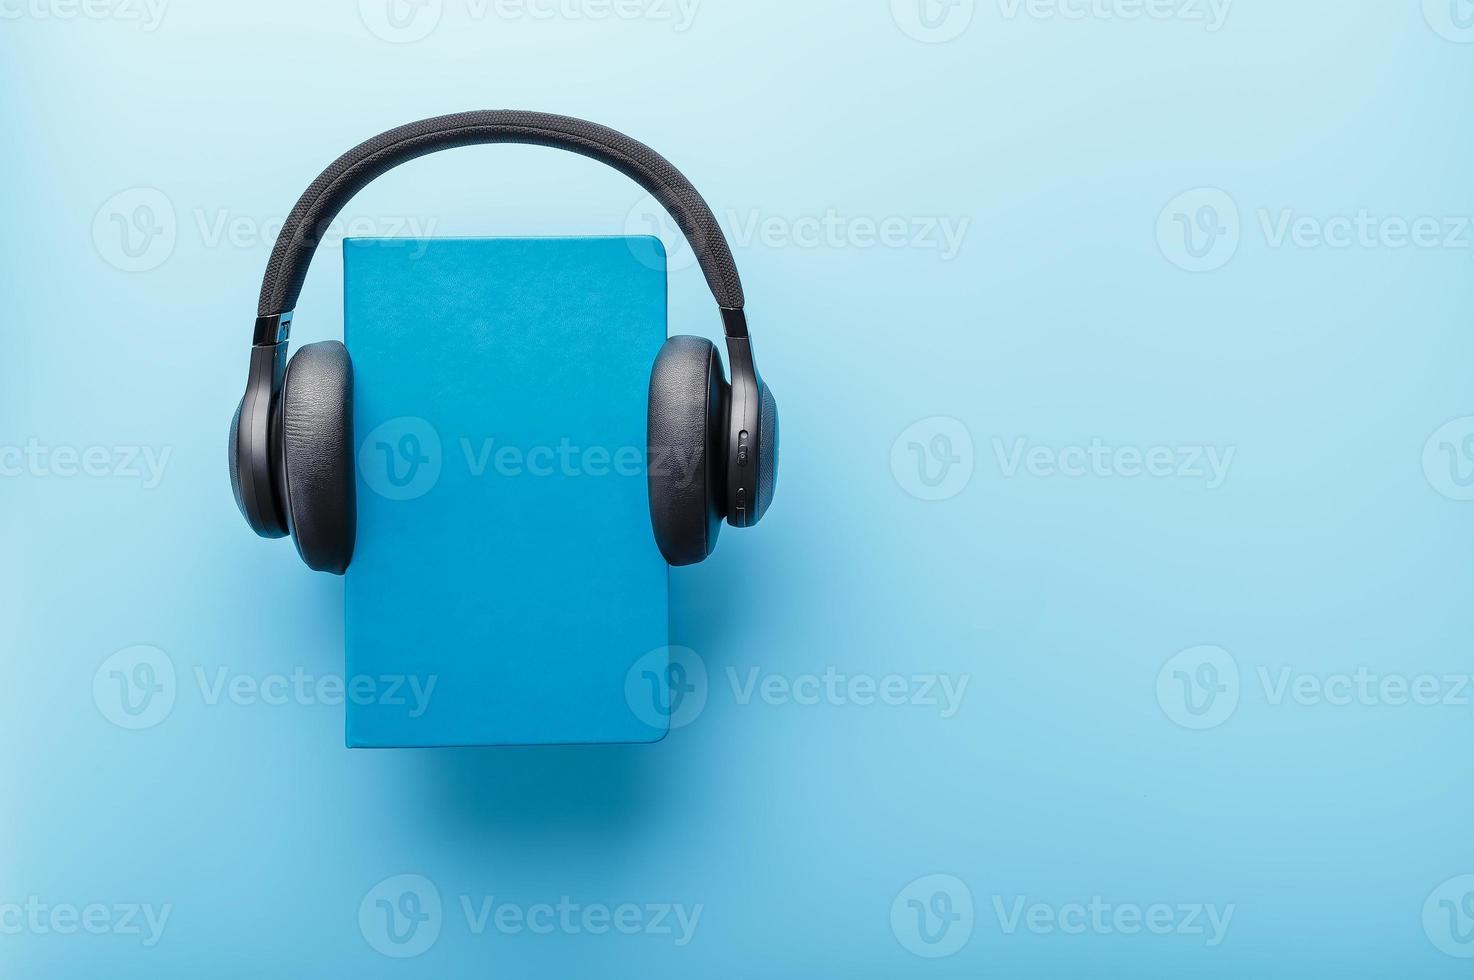 les écouteurs sont portés sur un livre dans une couverture rigide bleue sur fond bleu, vue de dessus. photo